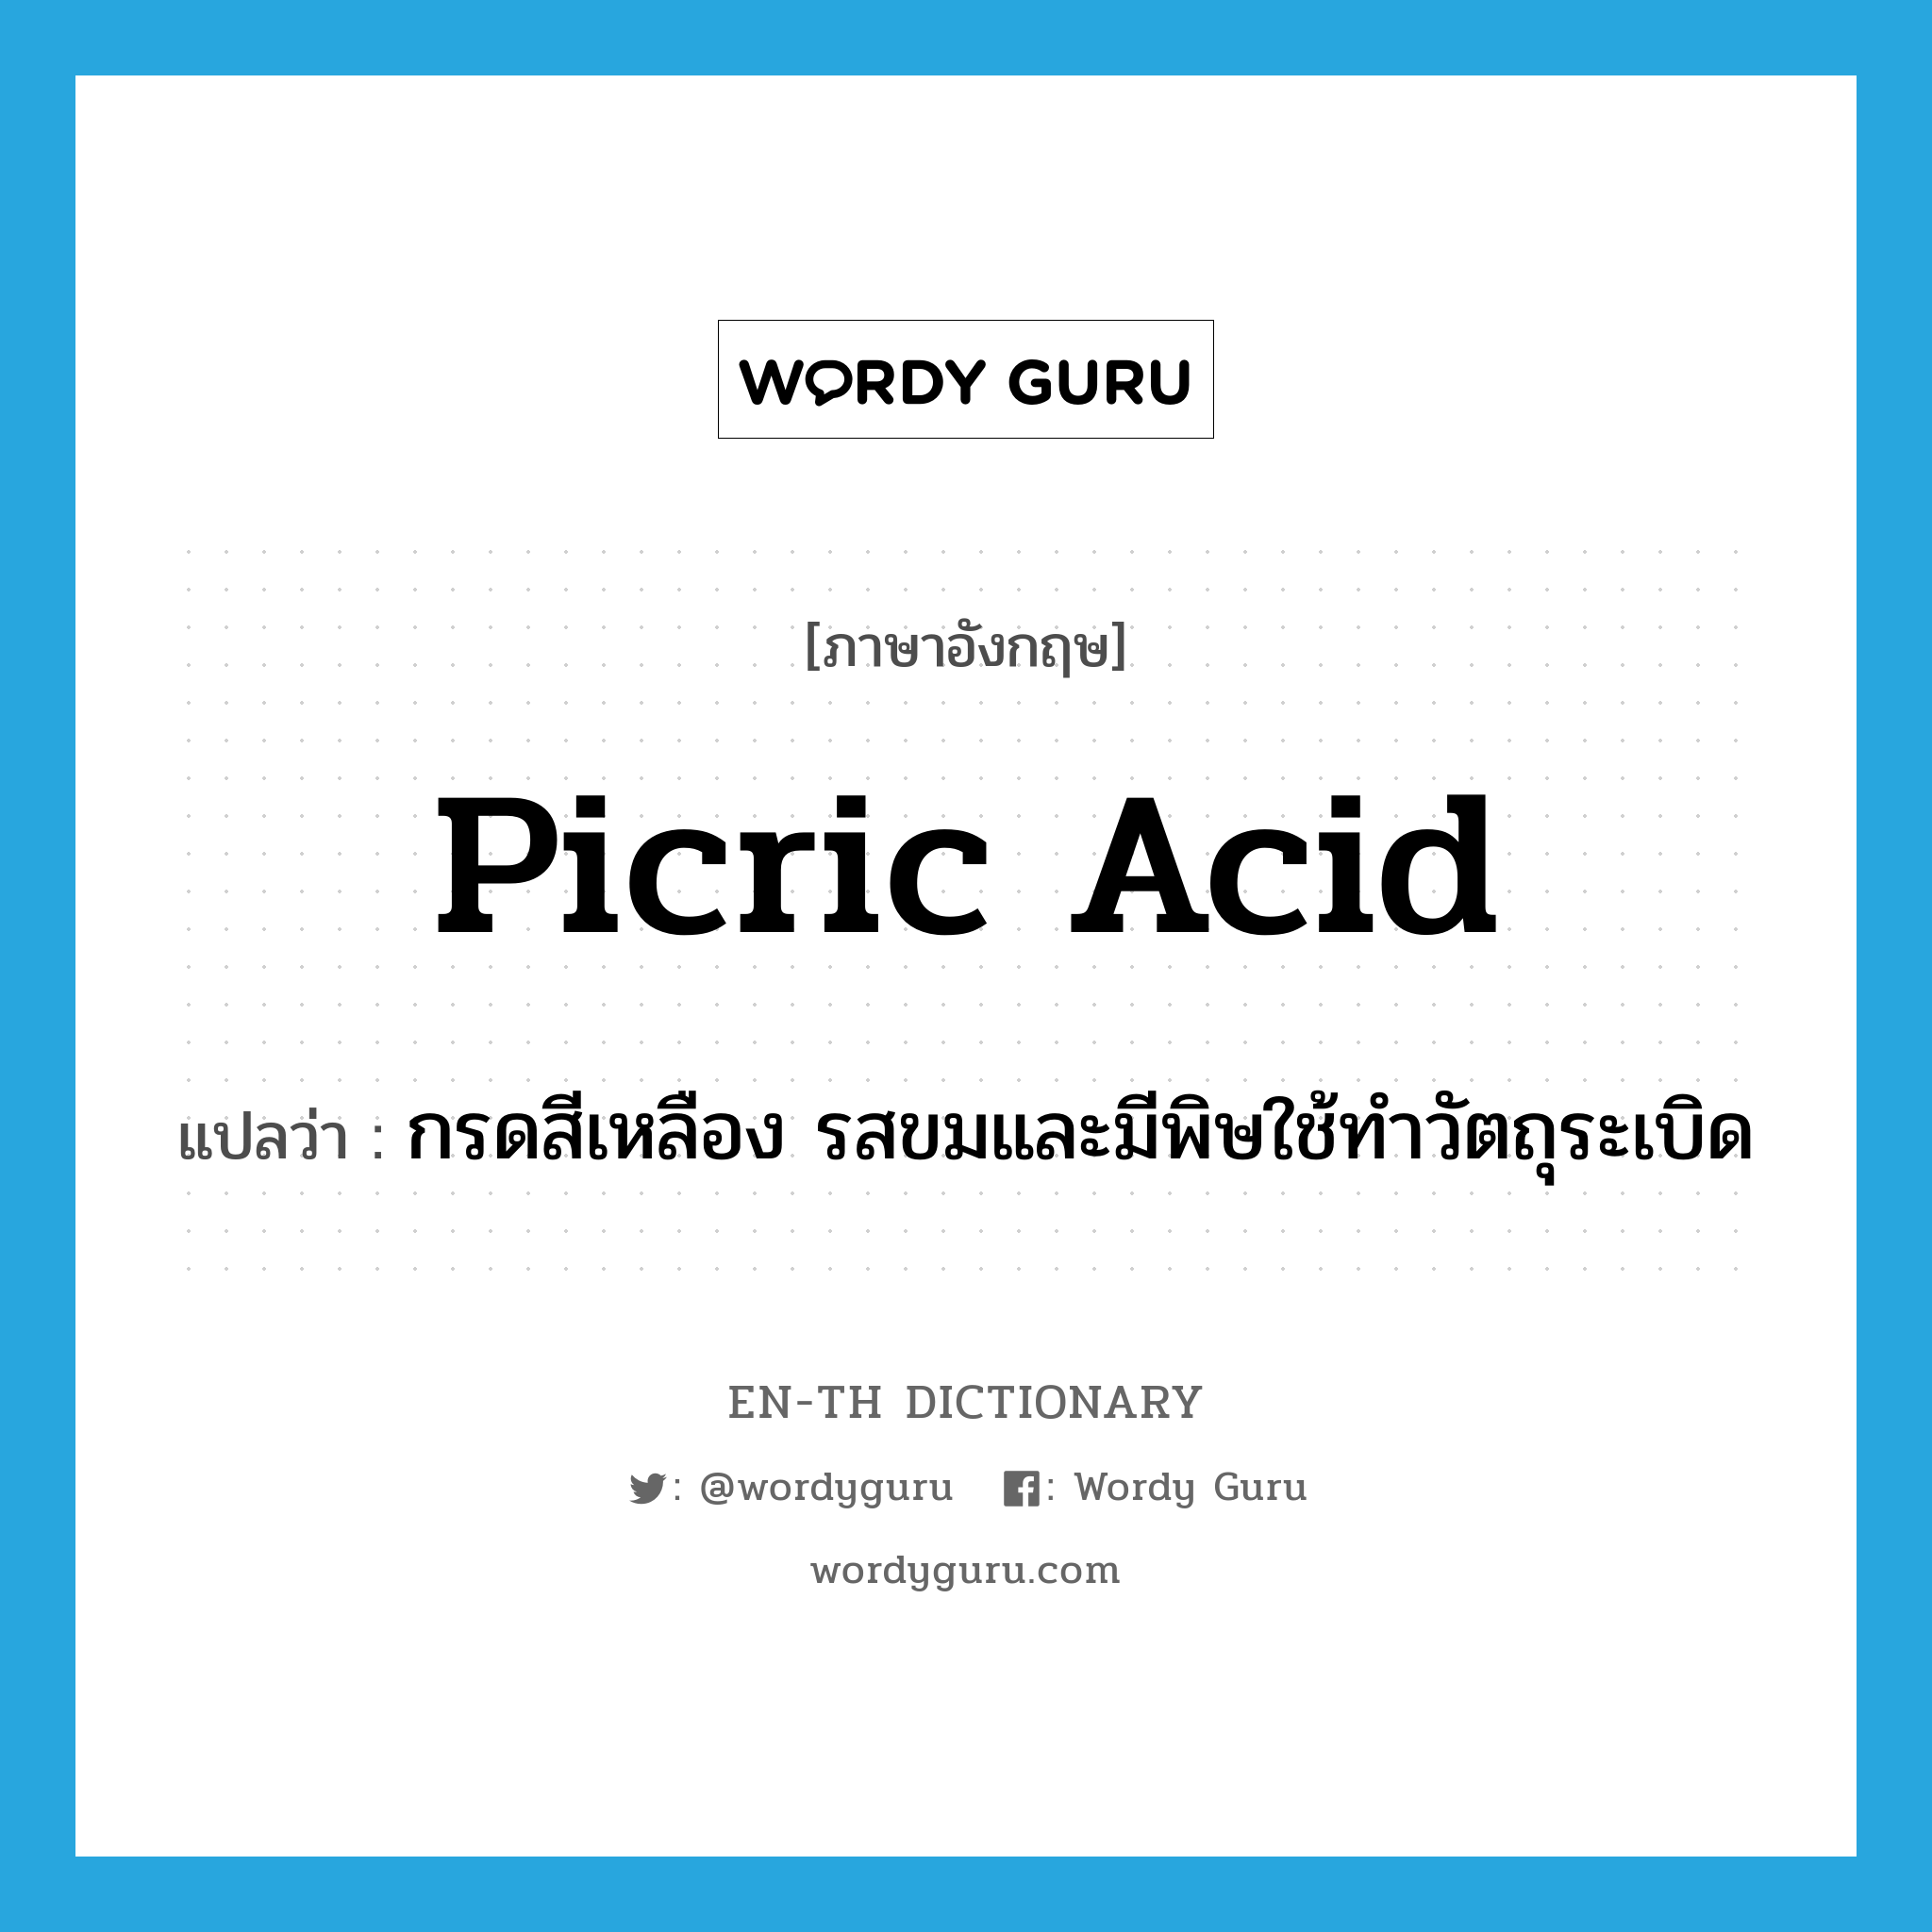 picric acid แปลว่า?, คำศัพท์ภาษาอังกฤษ picric acid แปลว่า กรดสีเหลือง รสขมและมีพิษใช้ทำวัตถุระเบิด ประเภท N หมวด N